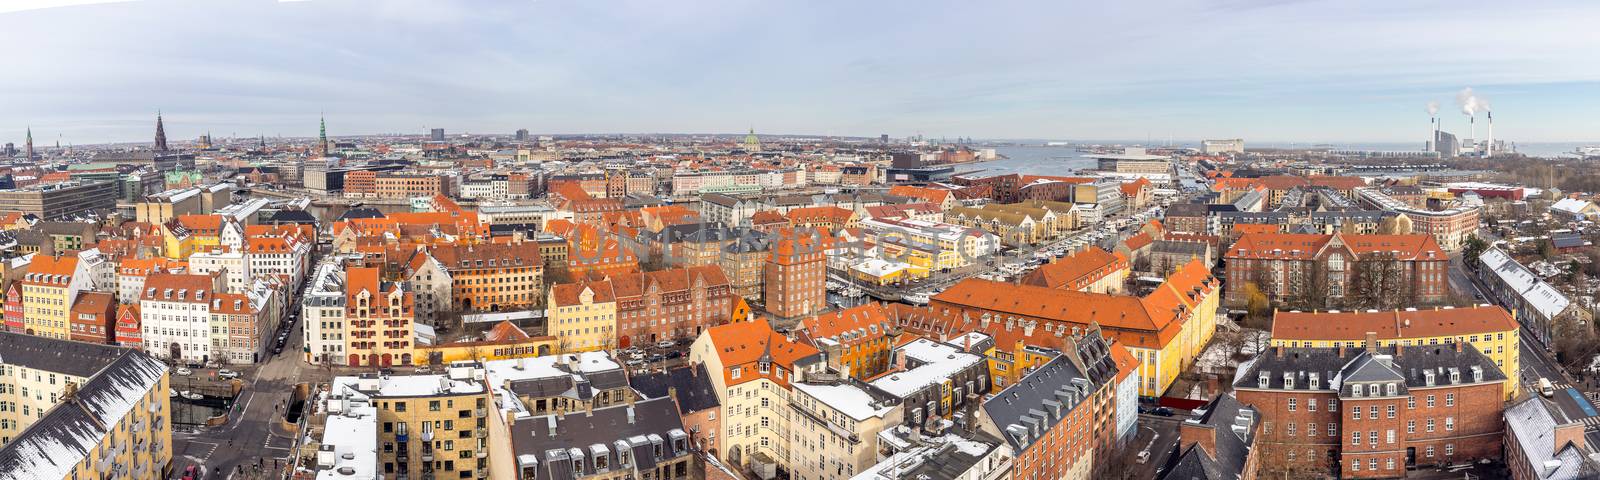 Copenhagen Aerial view Panorama by vichie81